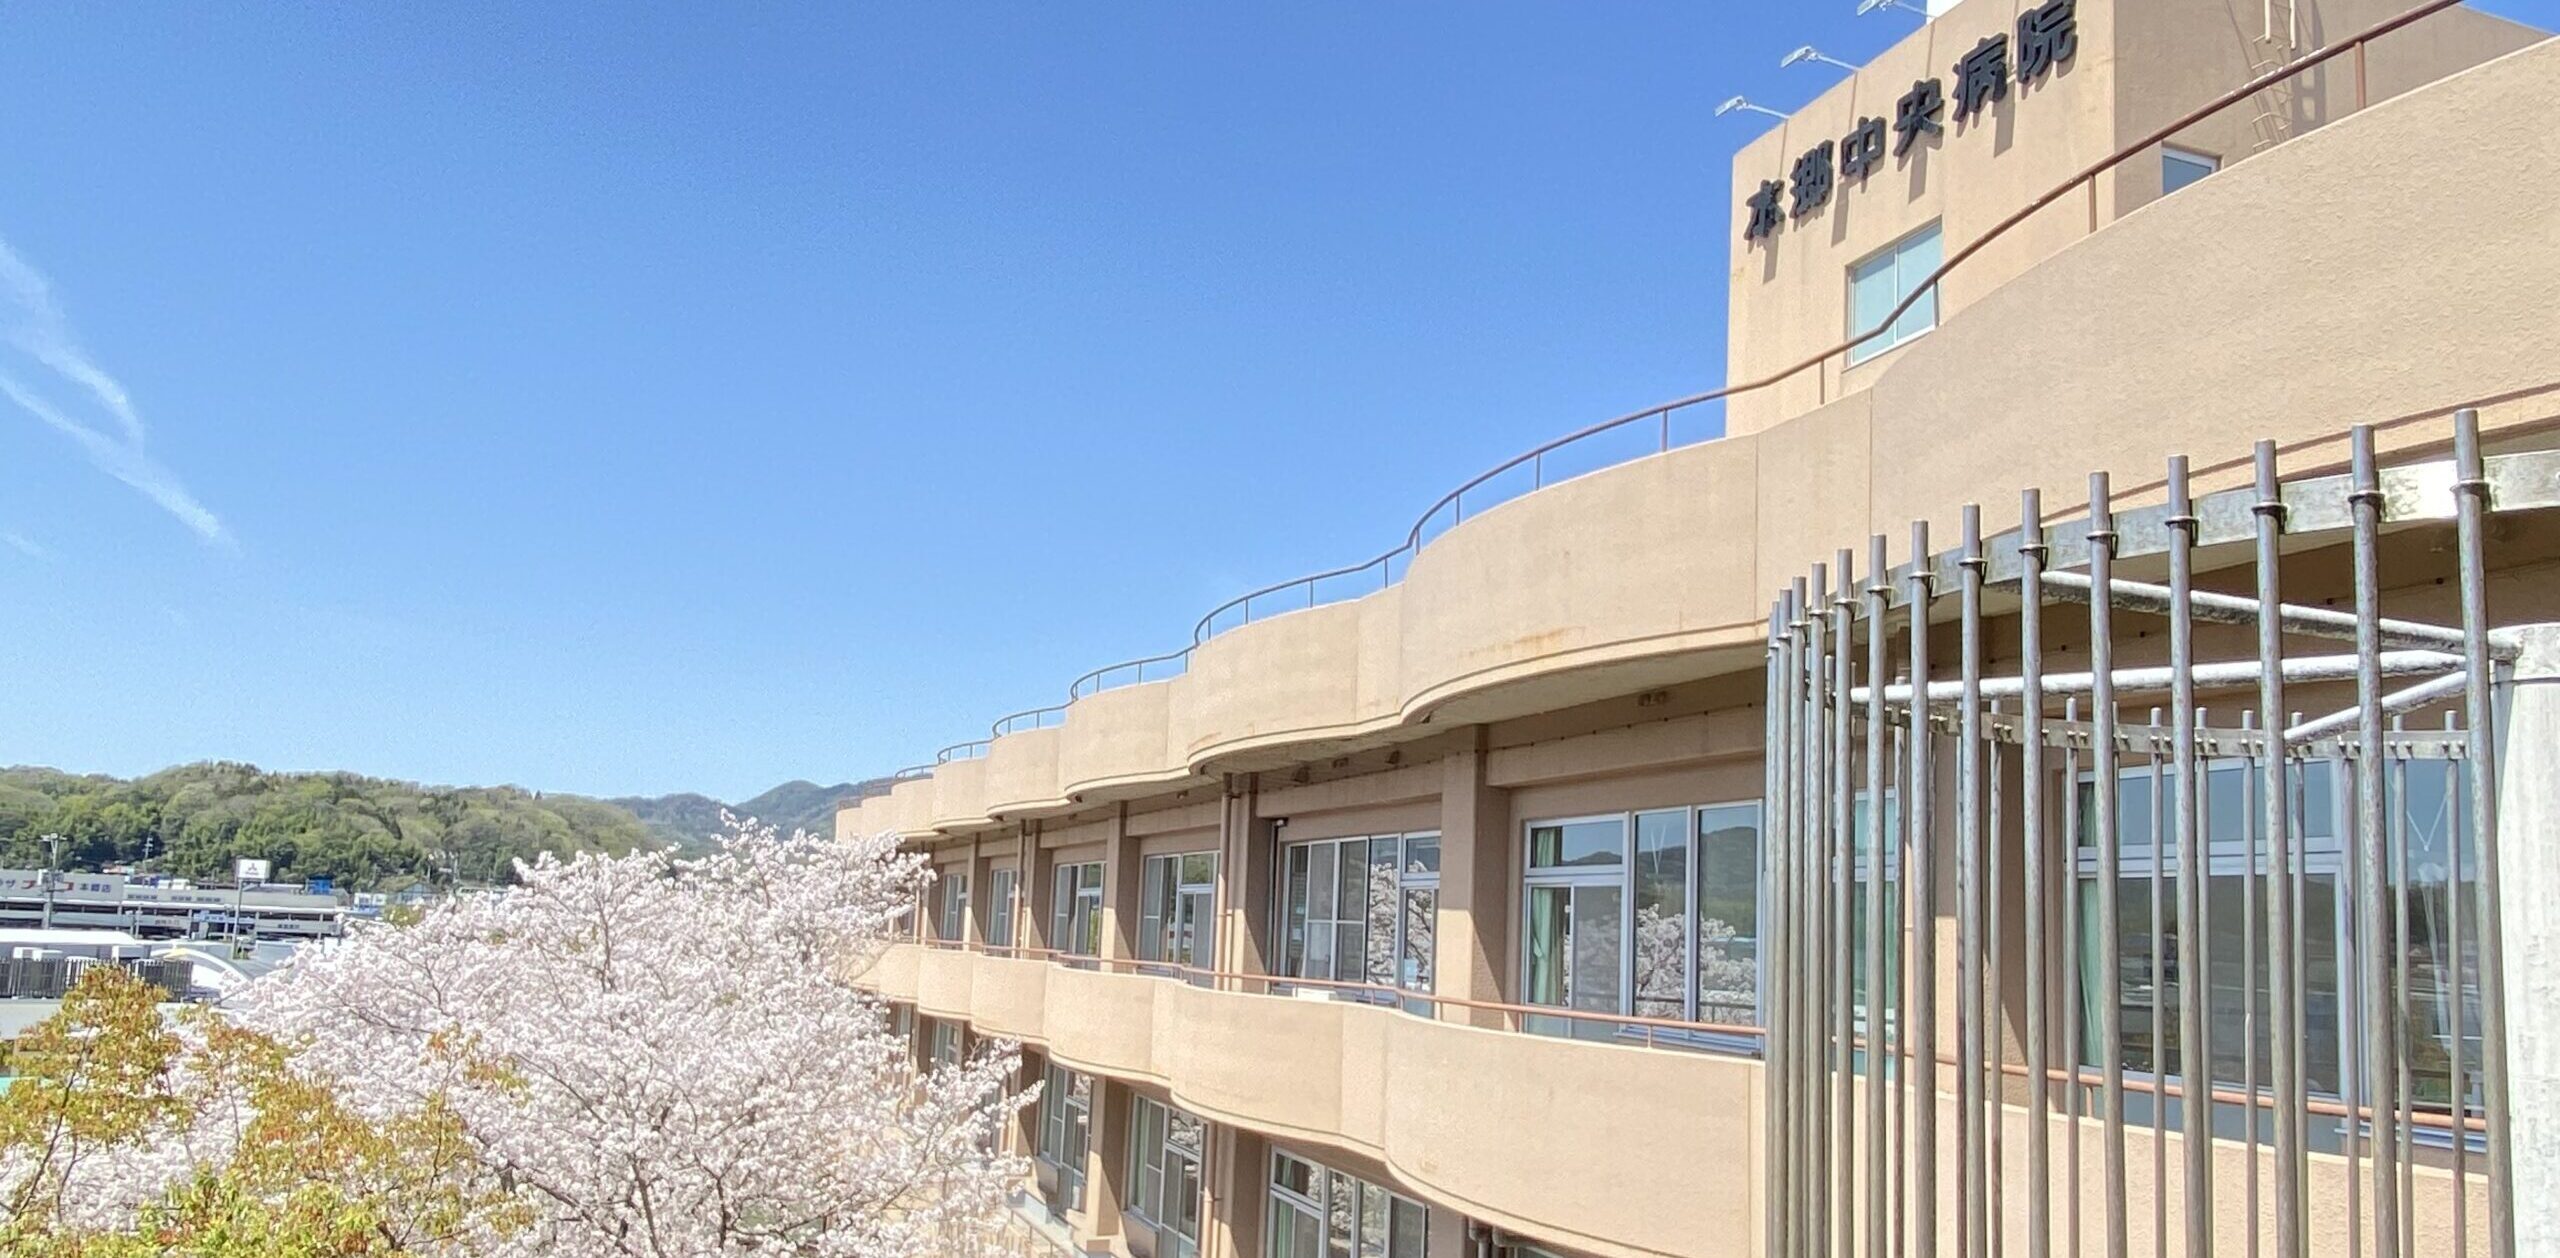 病院の外観写真。青空の下、中庭に咲いた桜が病院の窓に映って見えます。